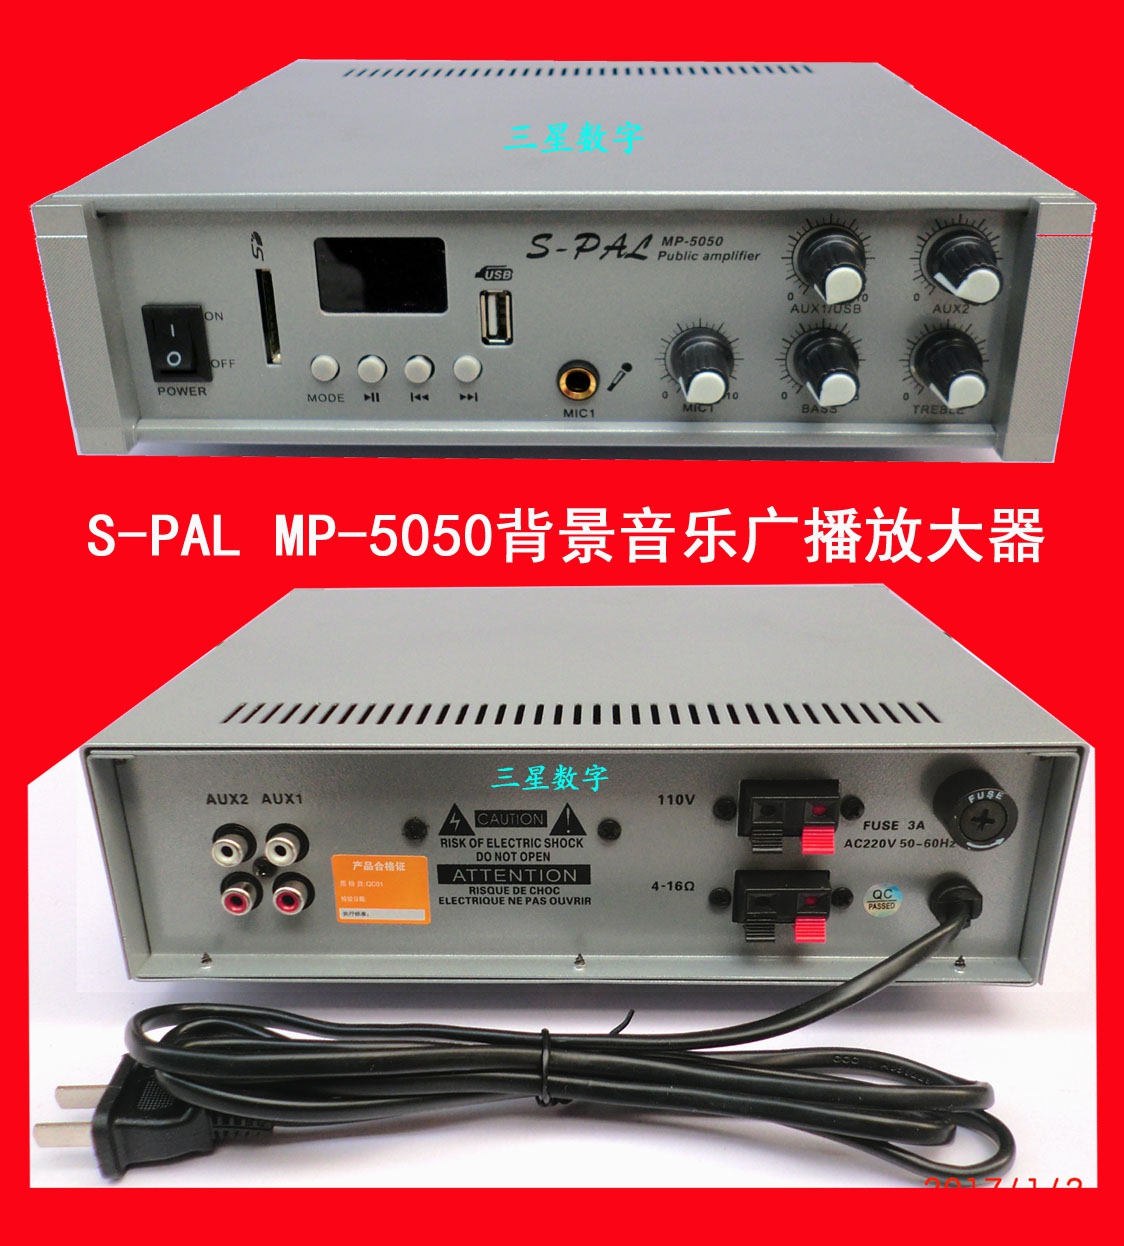 S-PAL MP-5050     50W õ Ŀ   -